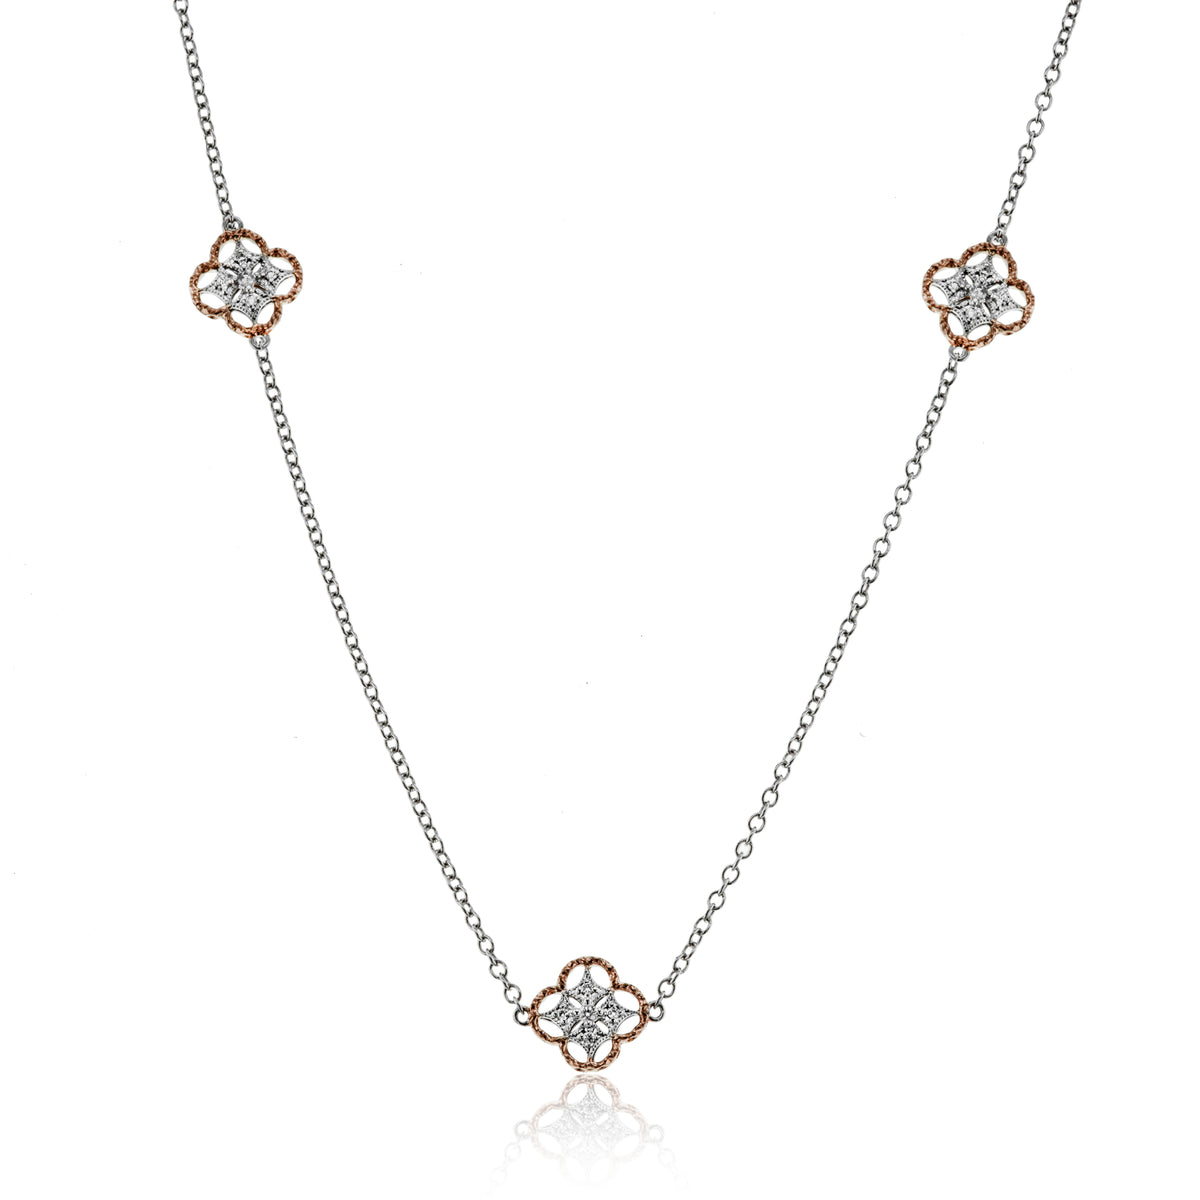 Simon G 18k Two Tone Diamond Necklace